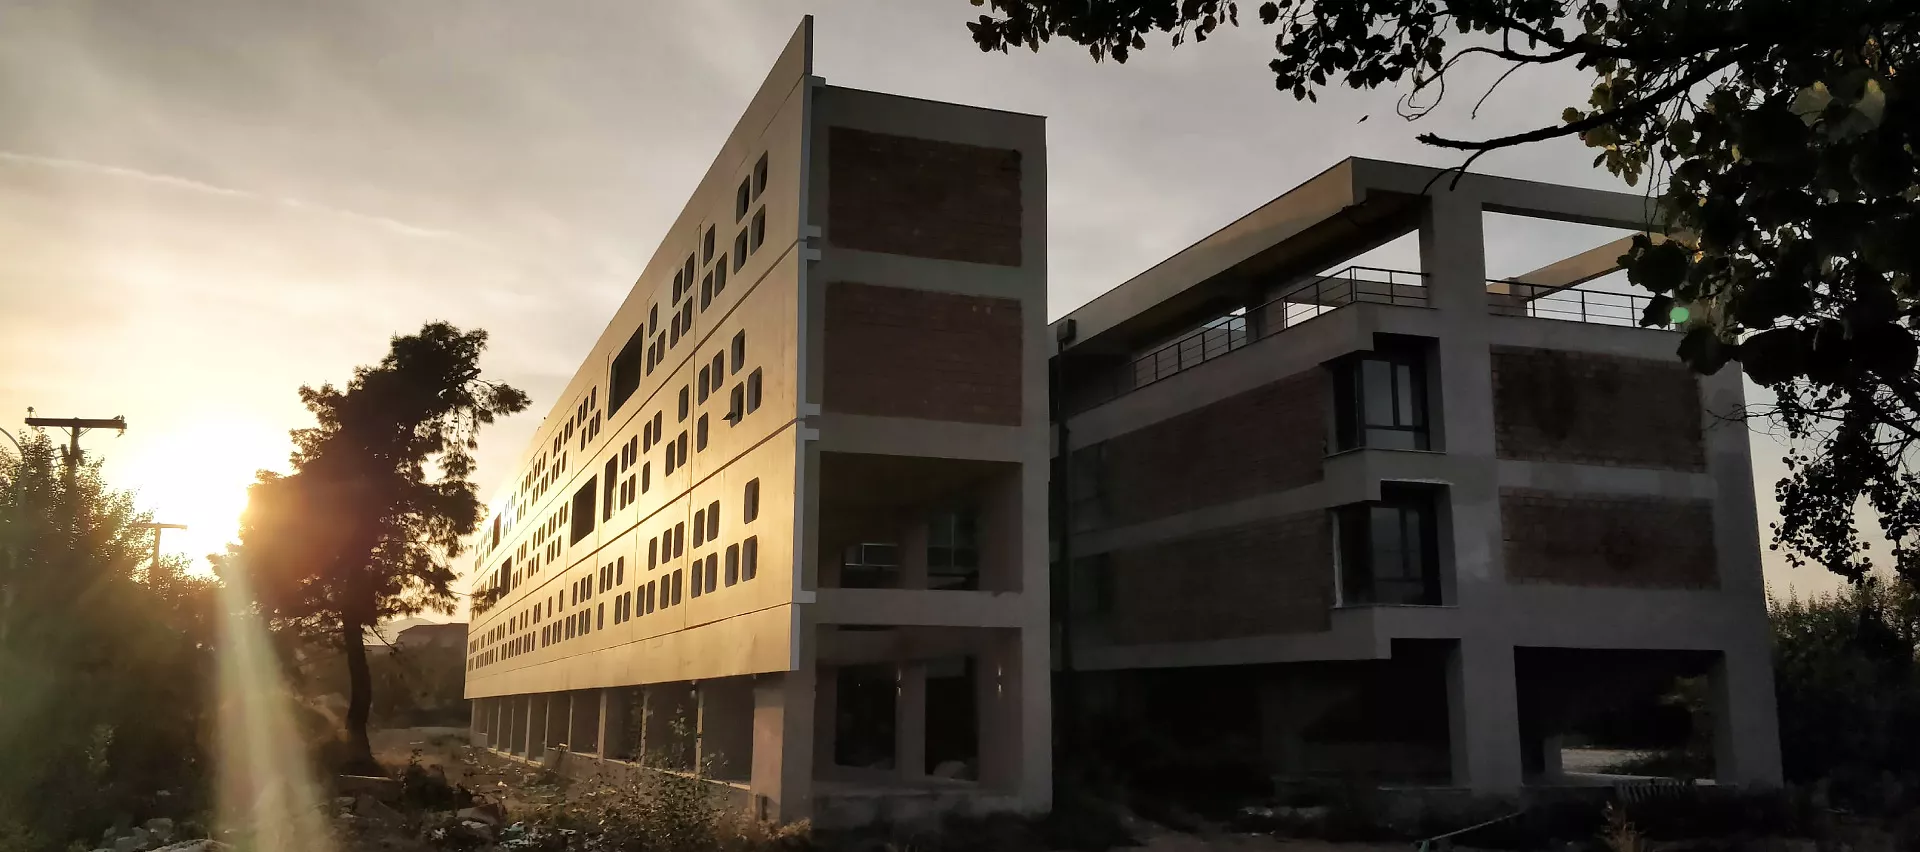 Υπερσύγχρονο κτίριο του Τμήματος ΗΜΜΥ του Πανεπιστημίου Θεσσαλίας, με προκατ στοιχεία ΠΡΟΚΕΛ Σημαντική